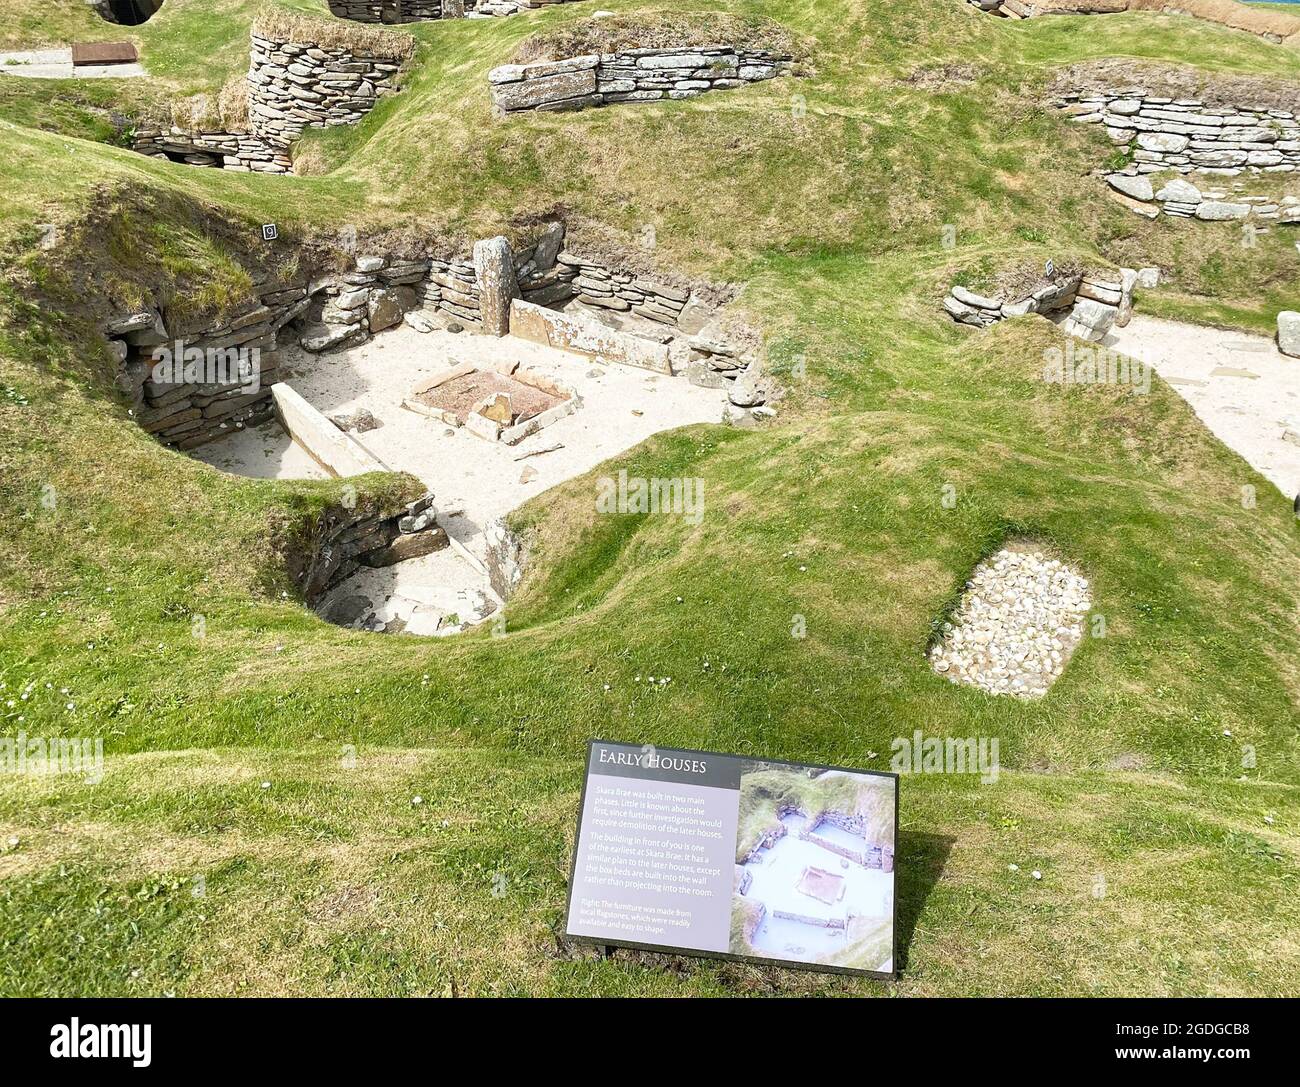 Asentamiento neolítico DE SKARA BRAE con vistas a la bahía de Skaill en la isla continental de Orkney, Escocia. Foto: Tony Gale Foto de stock